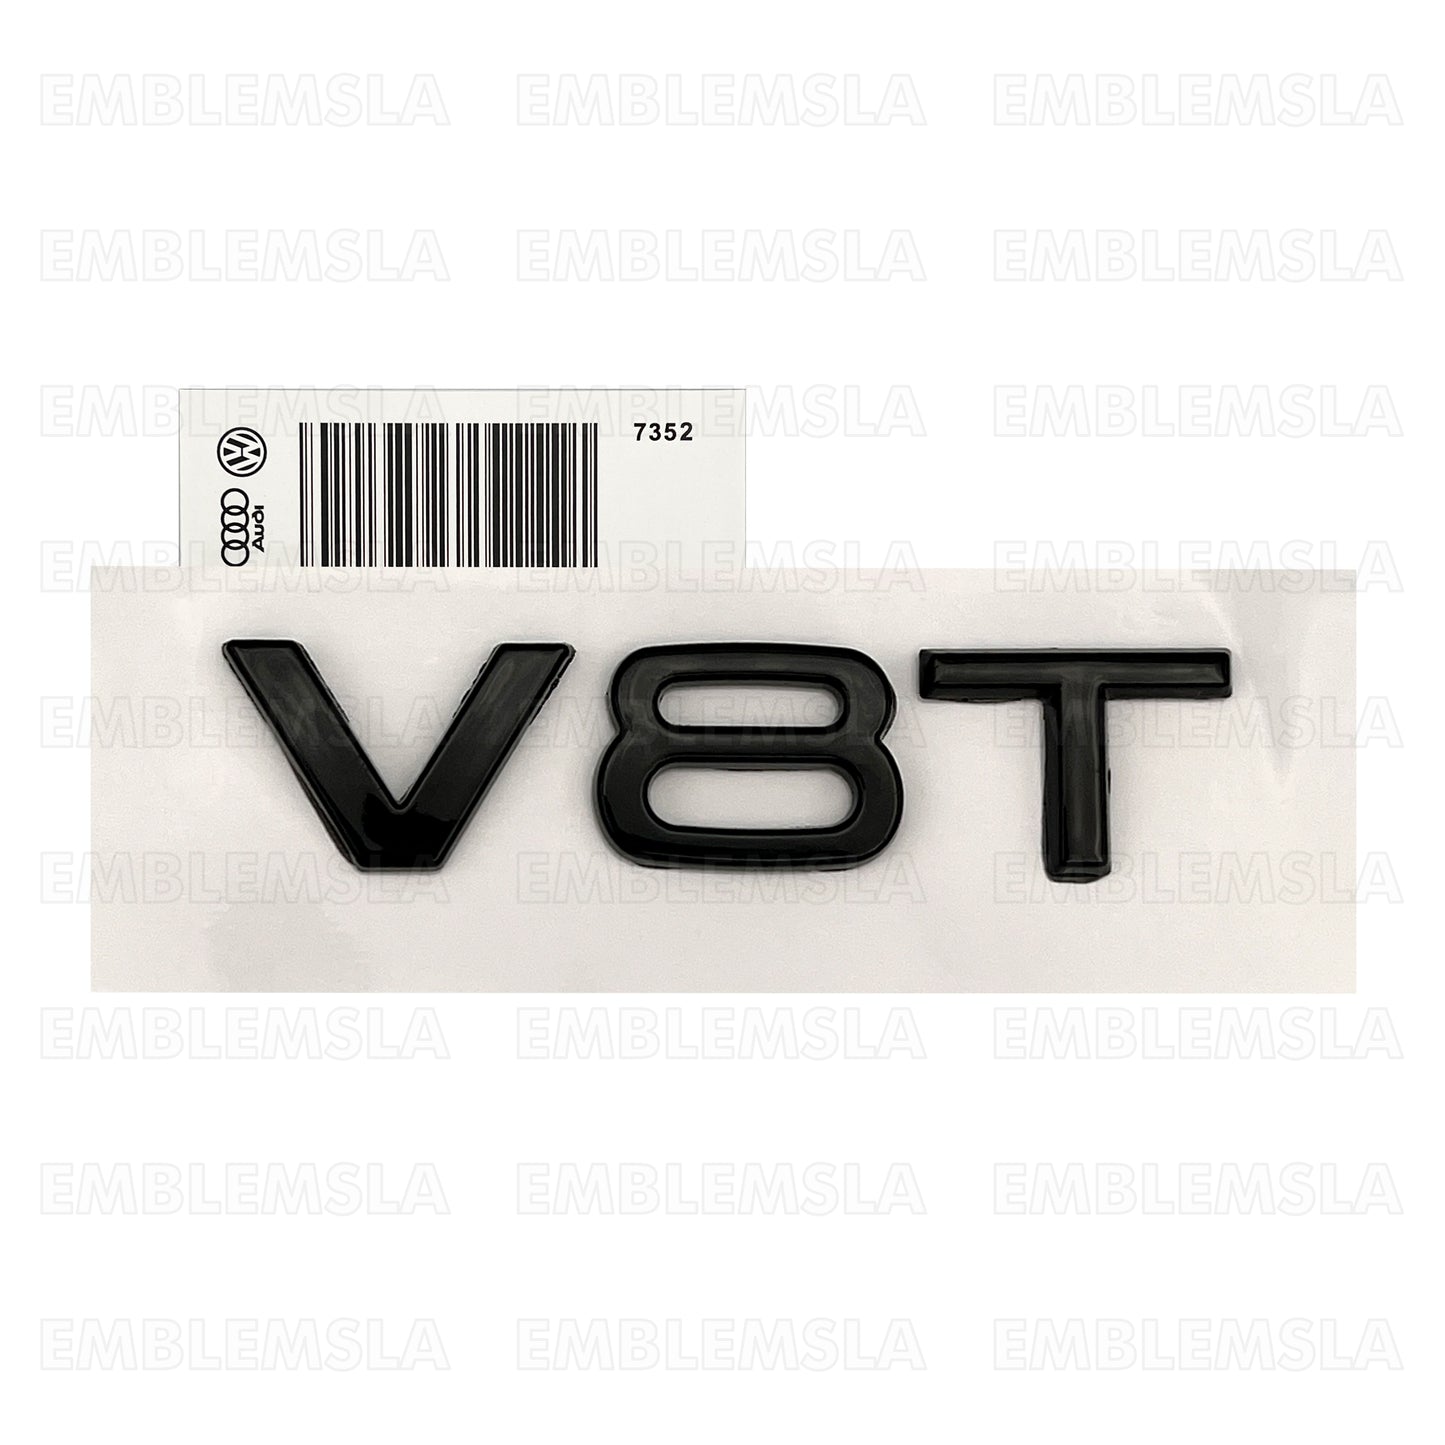 Audi V8T Emblem Gloss Black OEM Side Fender Badge A4 A5 A6 A7 S6 Q3 Q5 Q7 TT